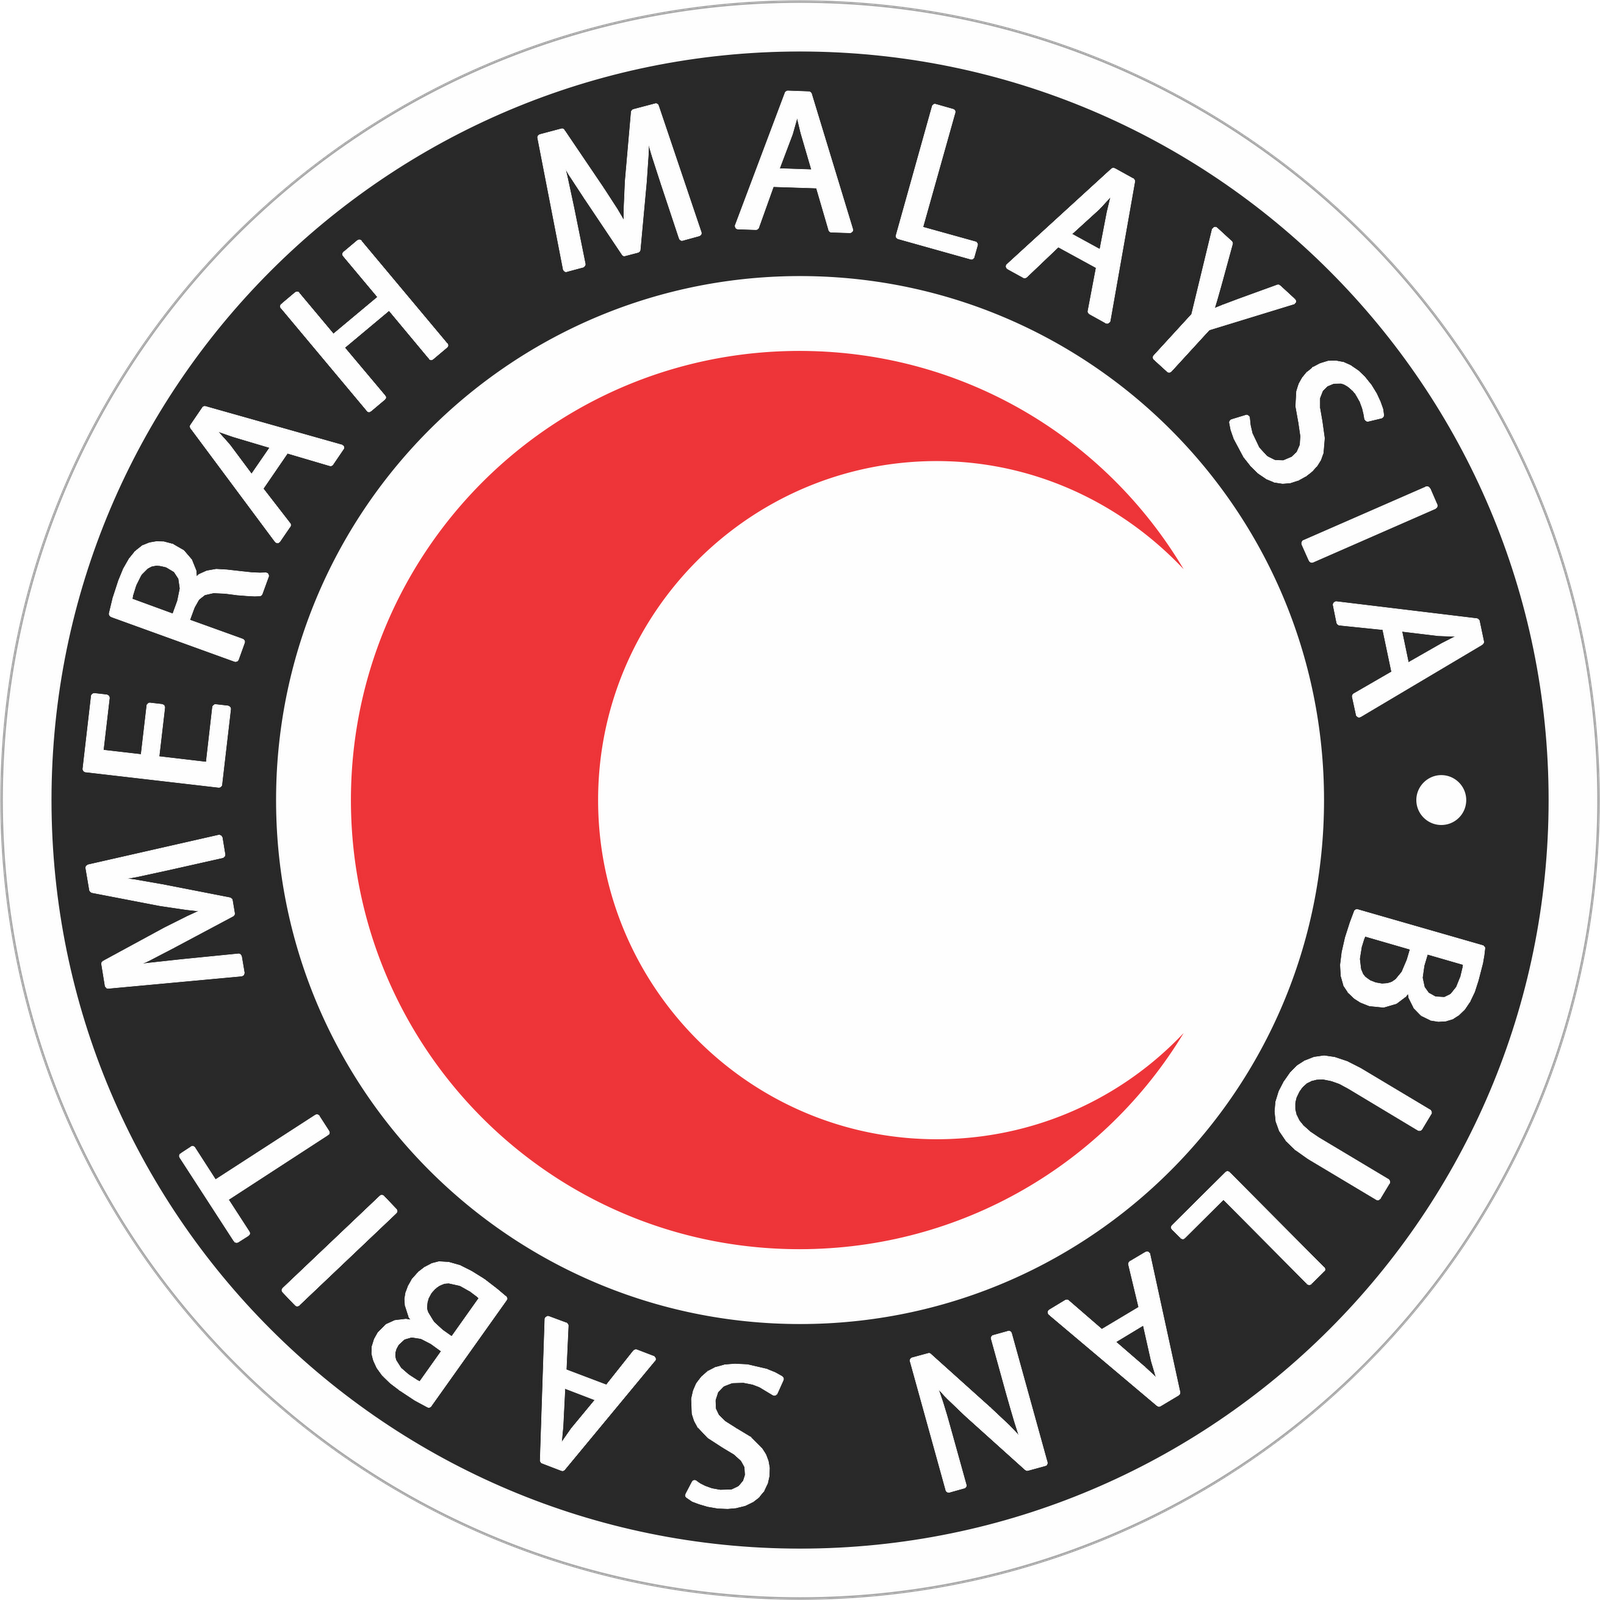 马来西亚国家象征，马来西亚国旗，马来西亚国徽，马来西亚国歌，马来西亚国鸟，马来西亚国兽，马来西亚国花与国石，马来西亚形象代表